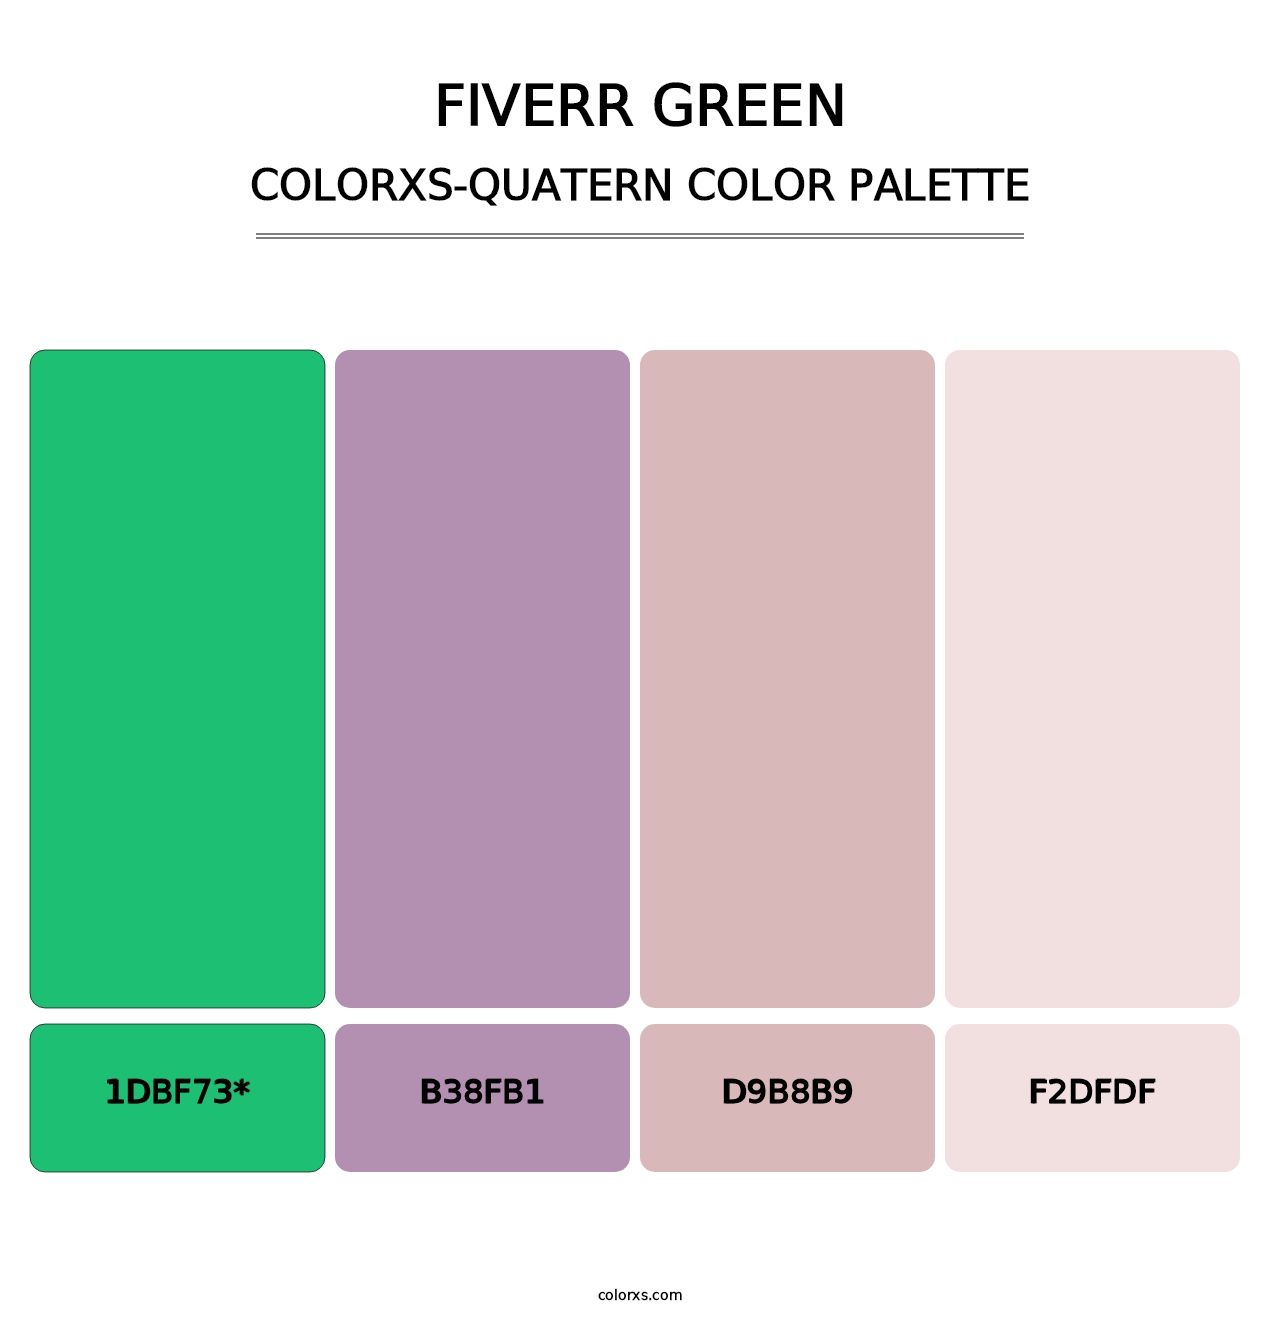 Fiverr Green - Colorxs Quatern Palette